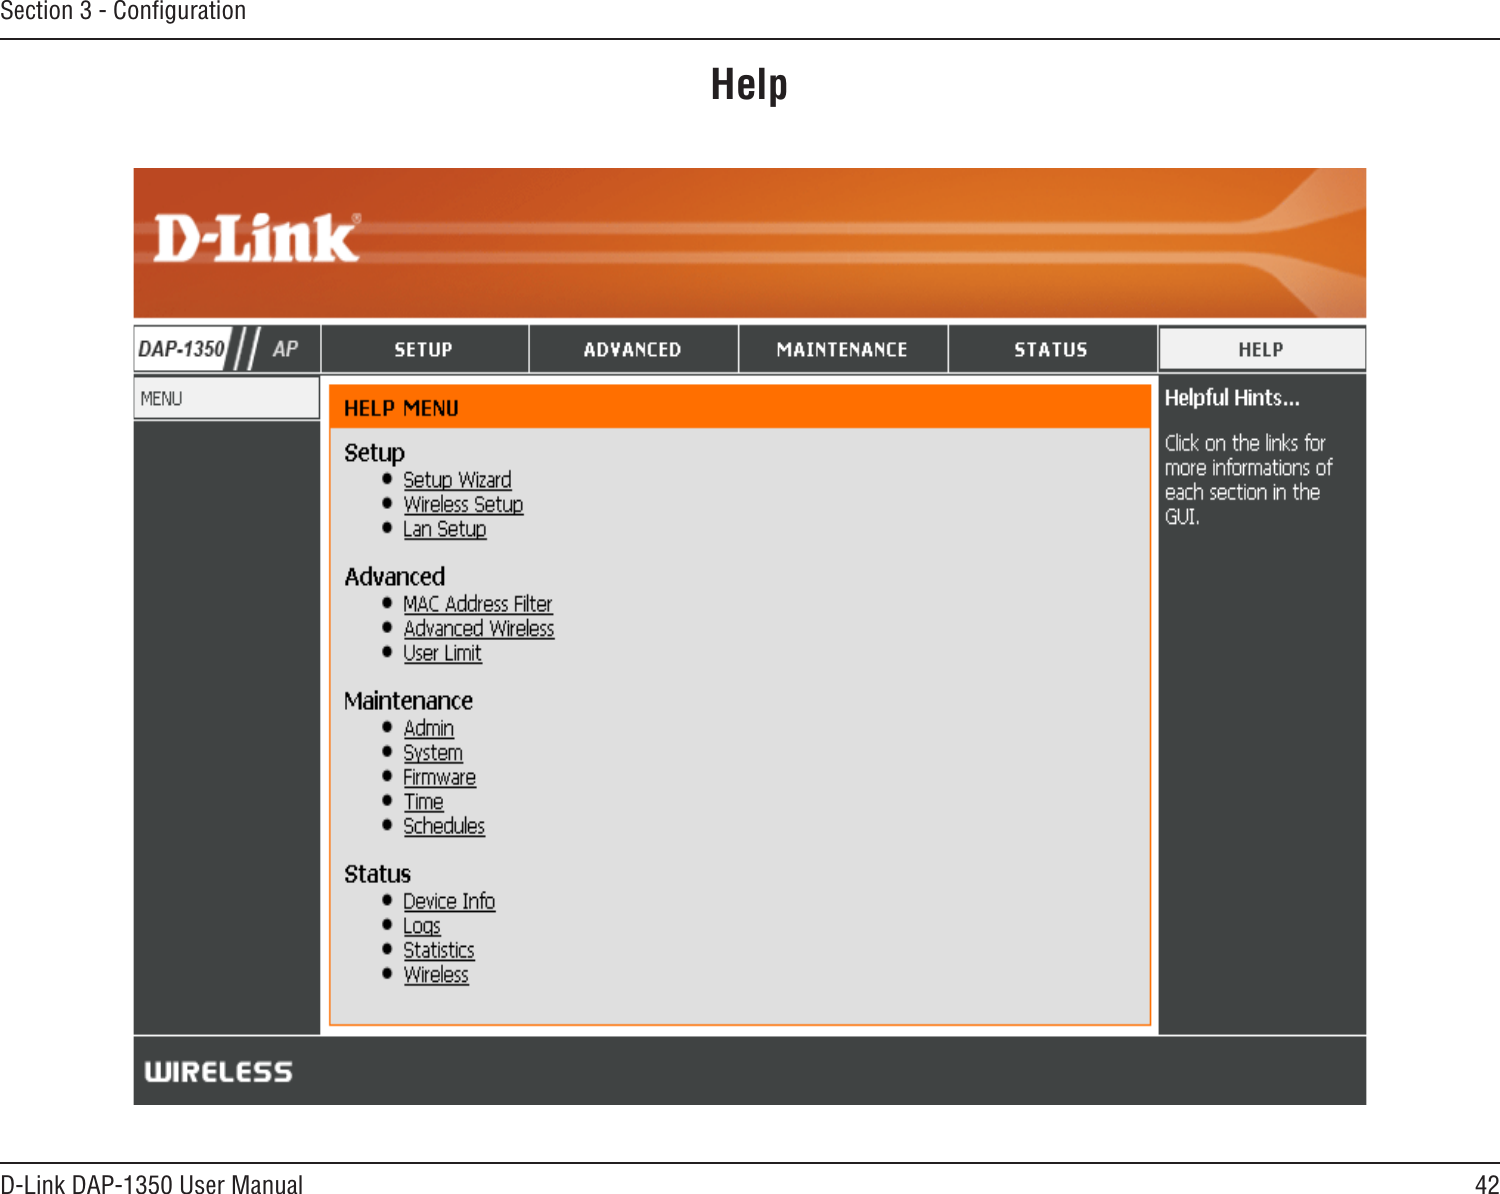 42D-Link DAP-1350 User ManualSection 3 - ConﬁgurationHelp